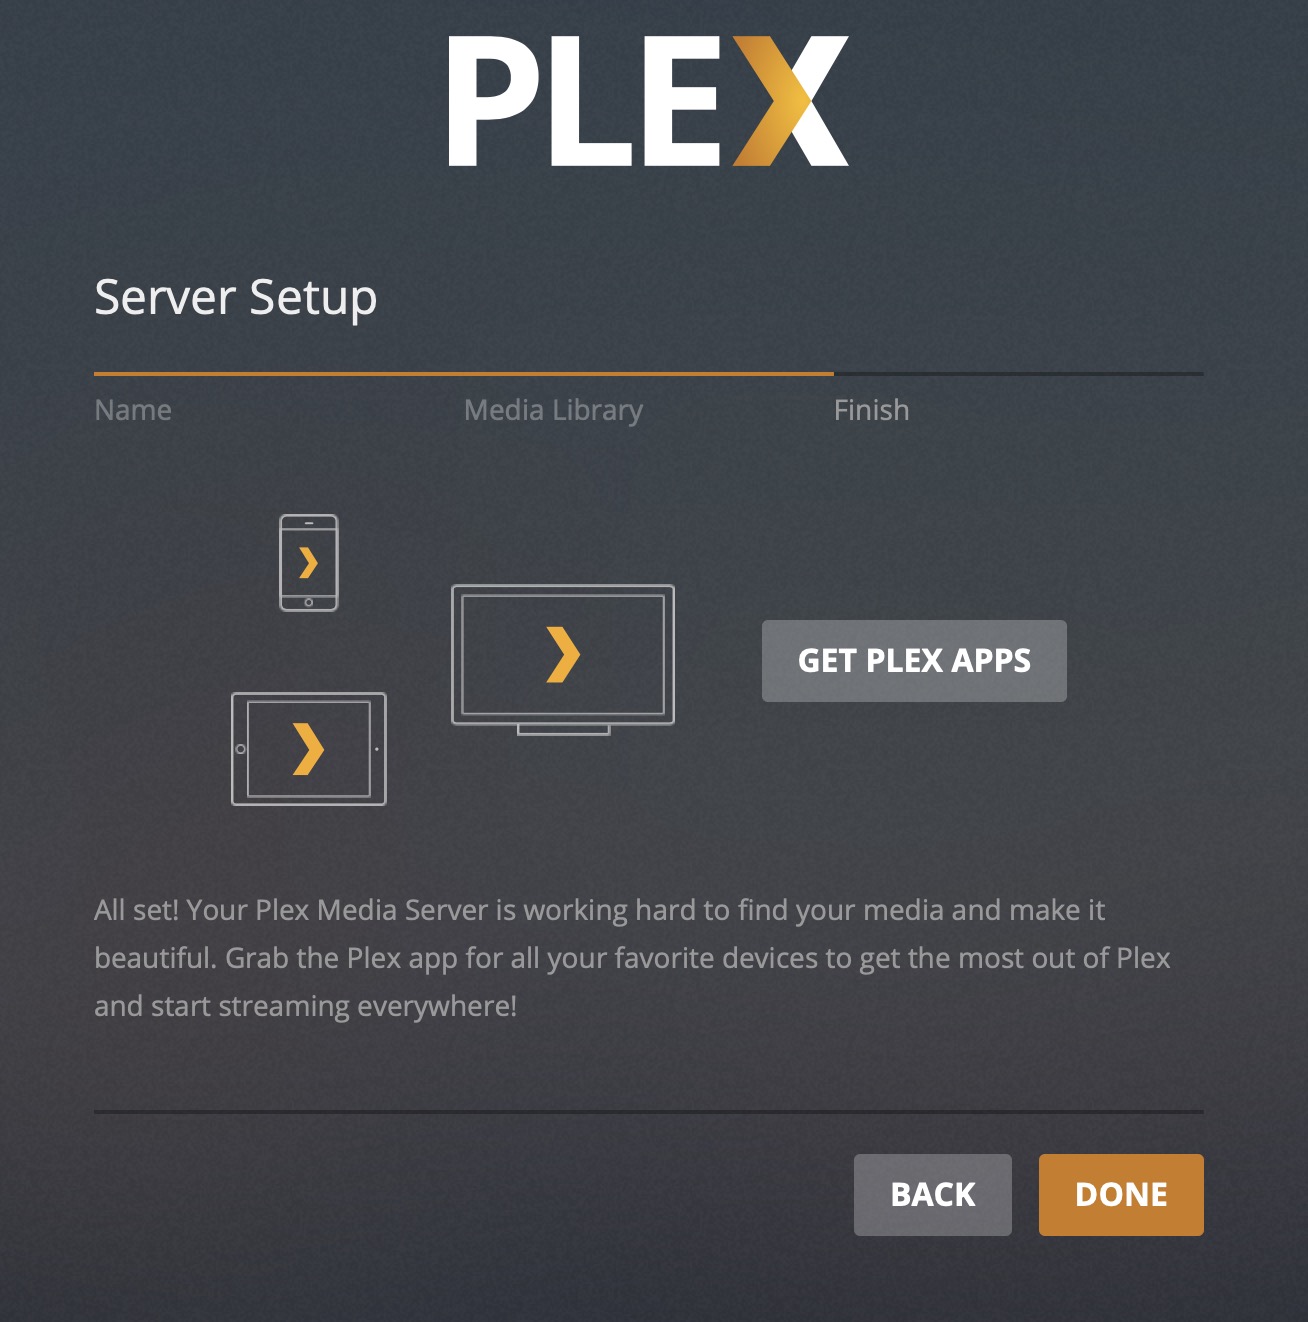 plex media server synology